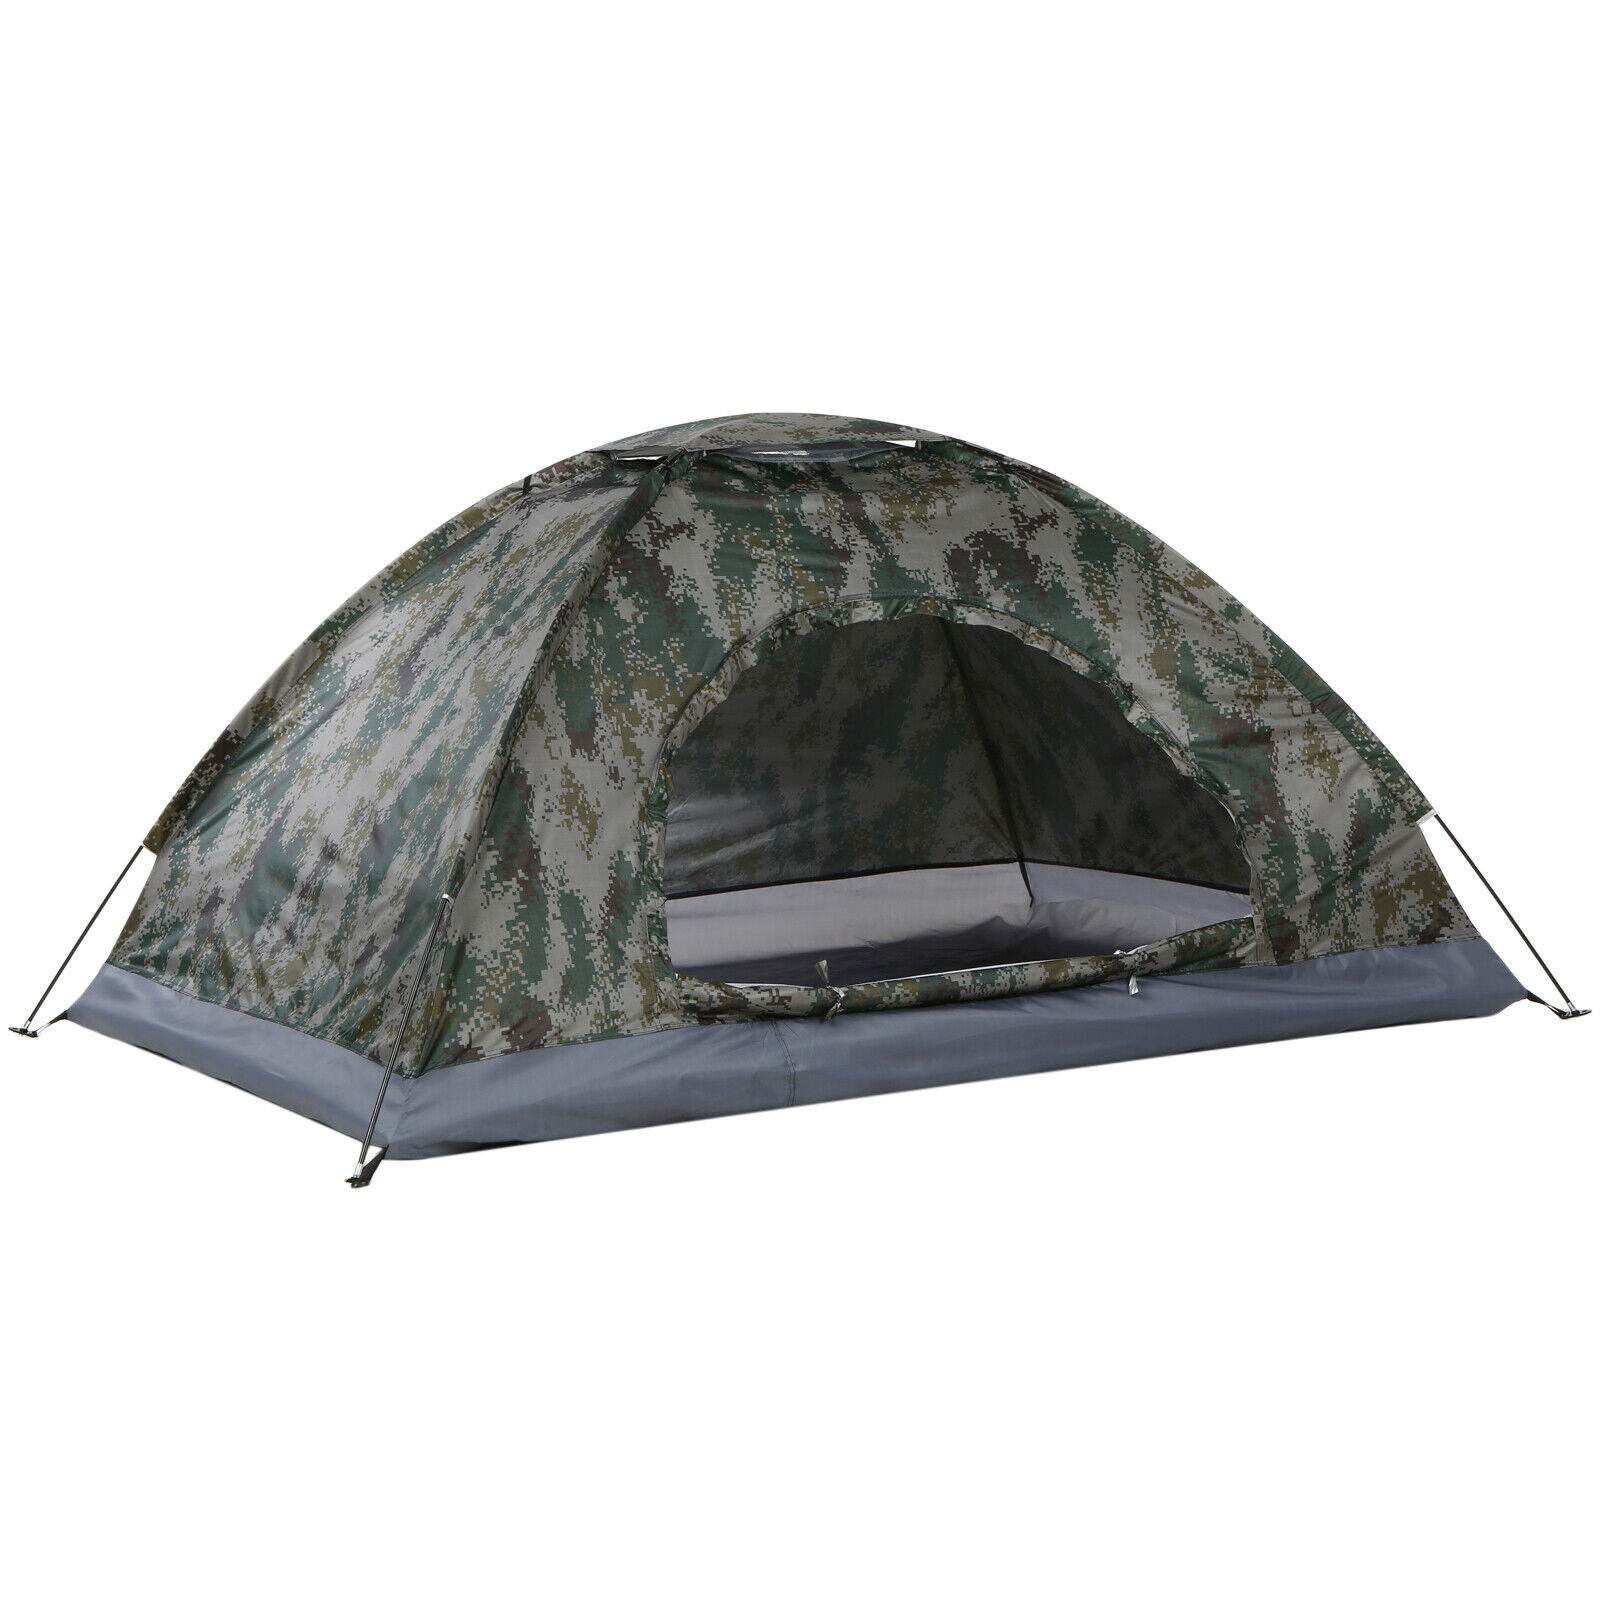 Campingzelt,Outdoor Trekkingzelt,UV-Schutz,Wasserdicht,2 Personen,Camping Zelt